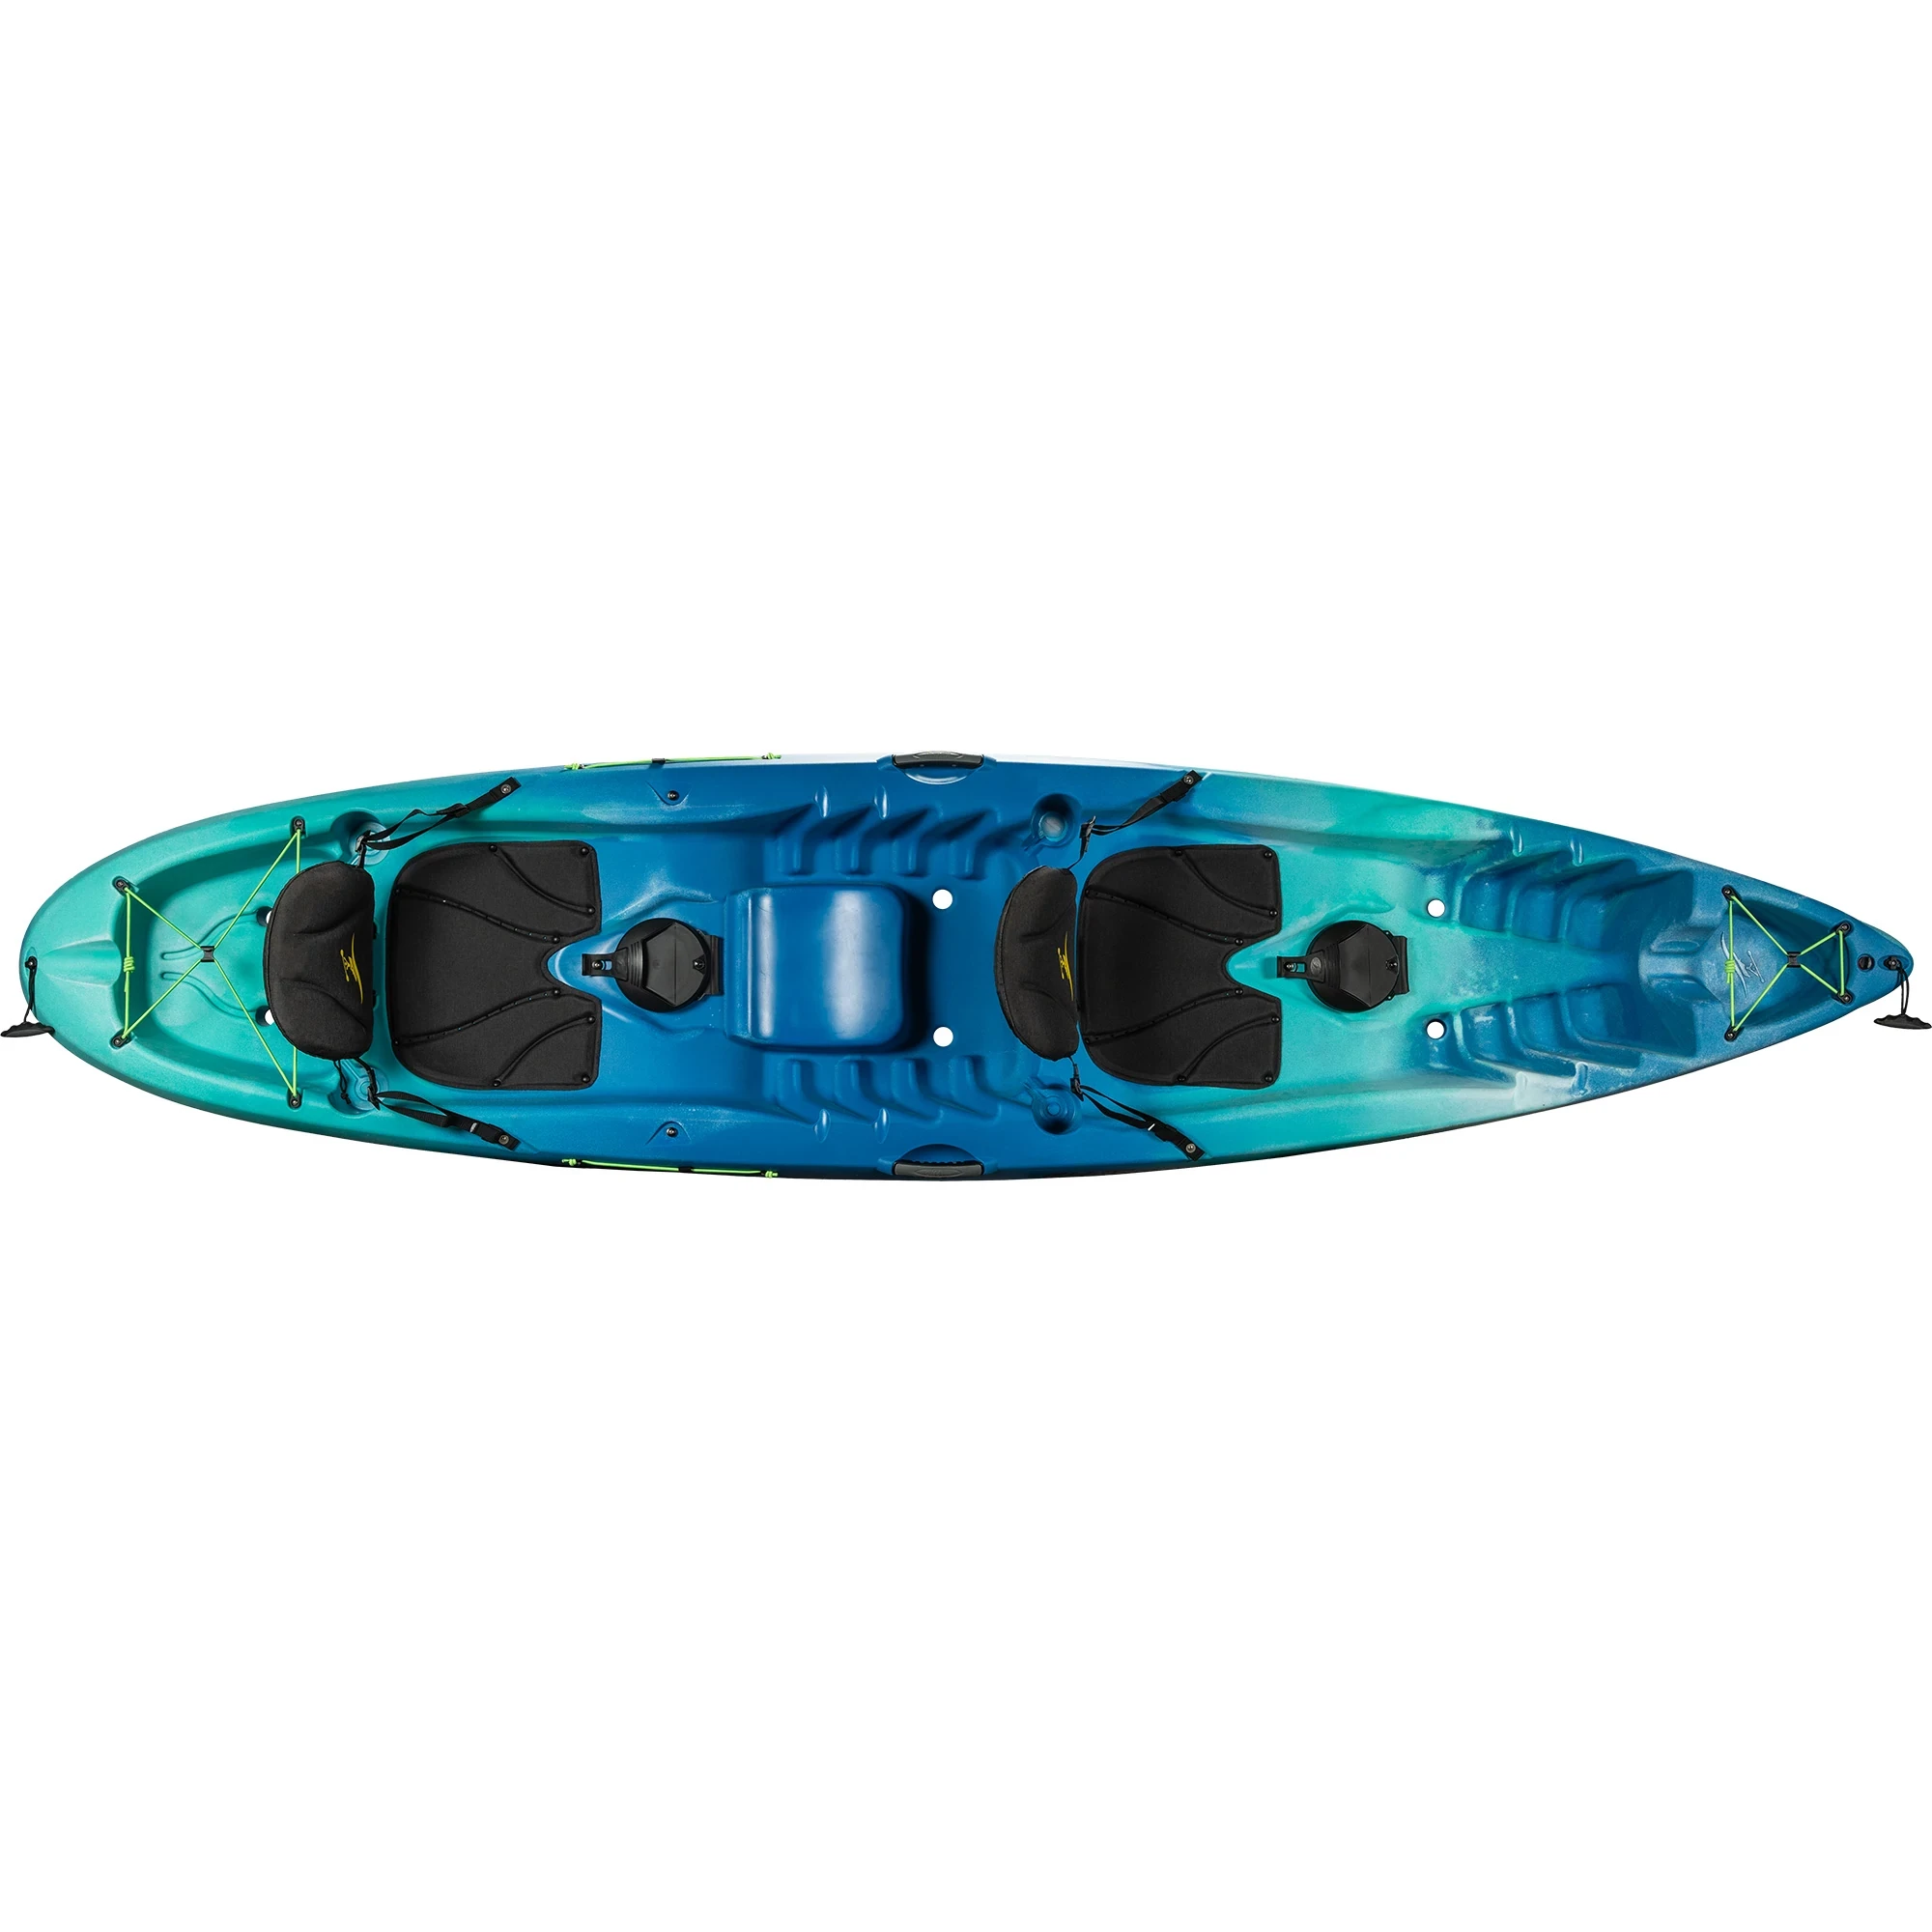 Ocean Kayak Malibu Two - Seaglass - Top View